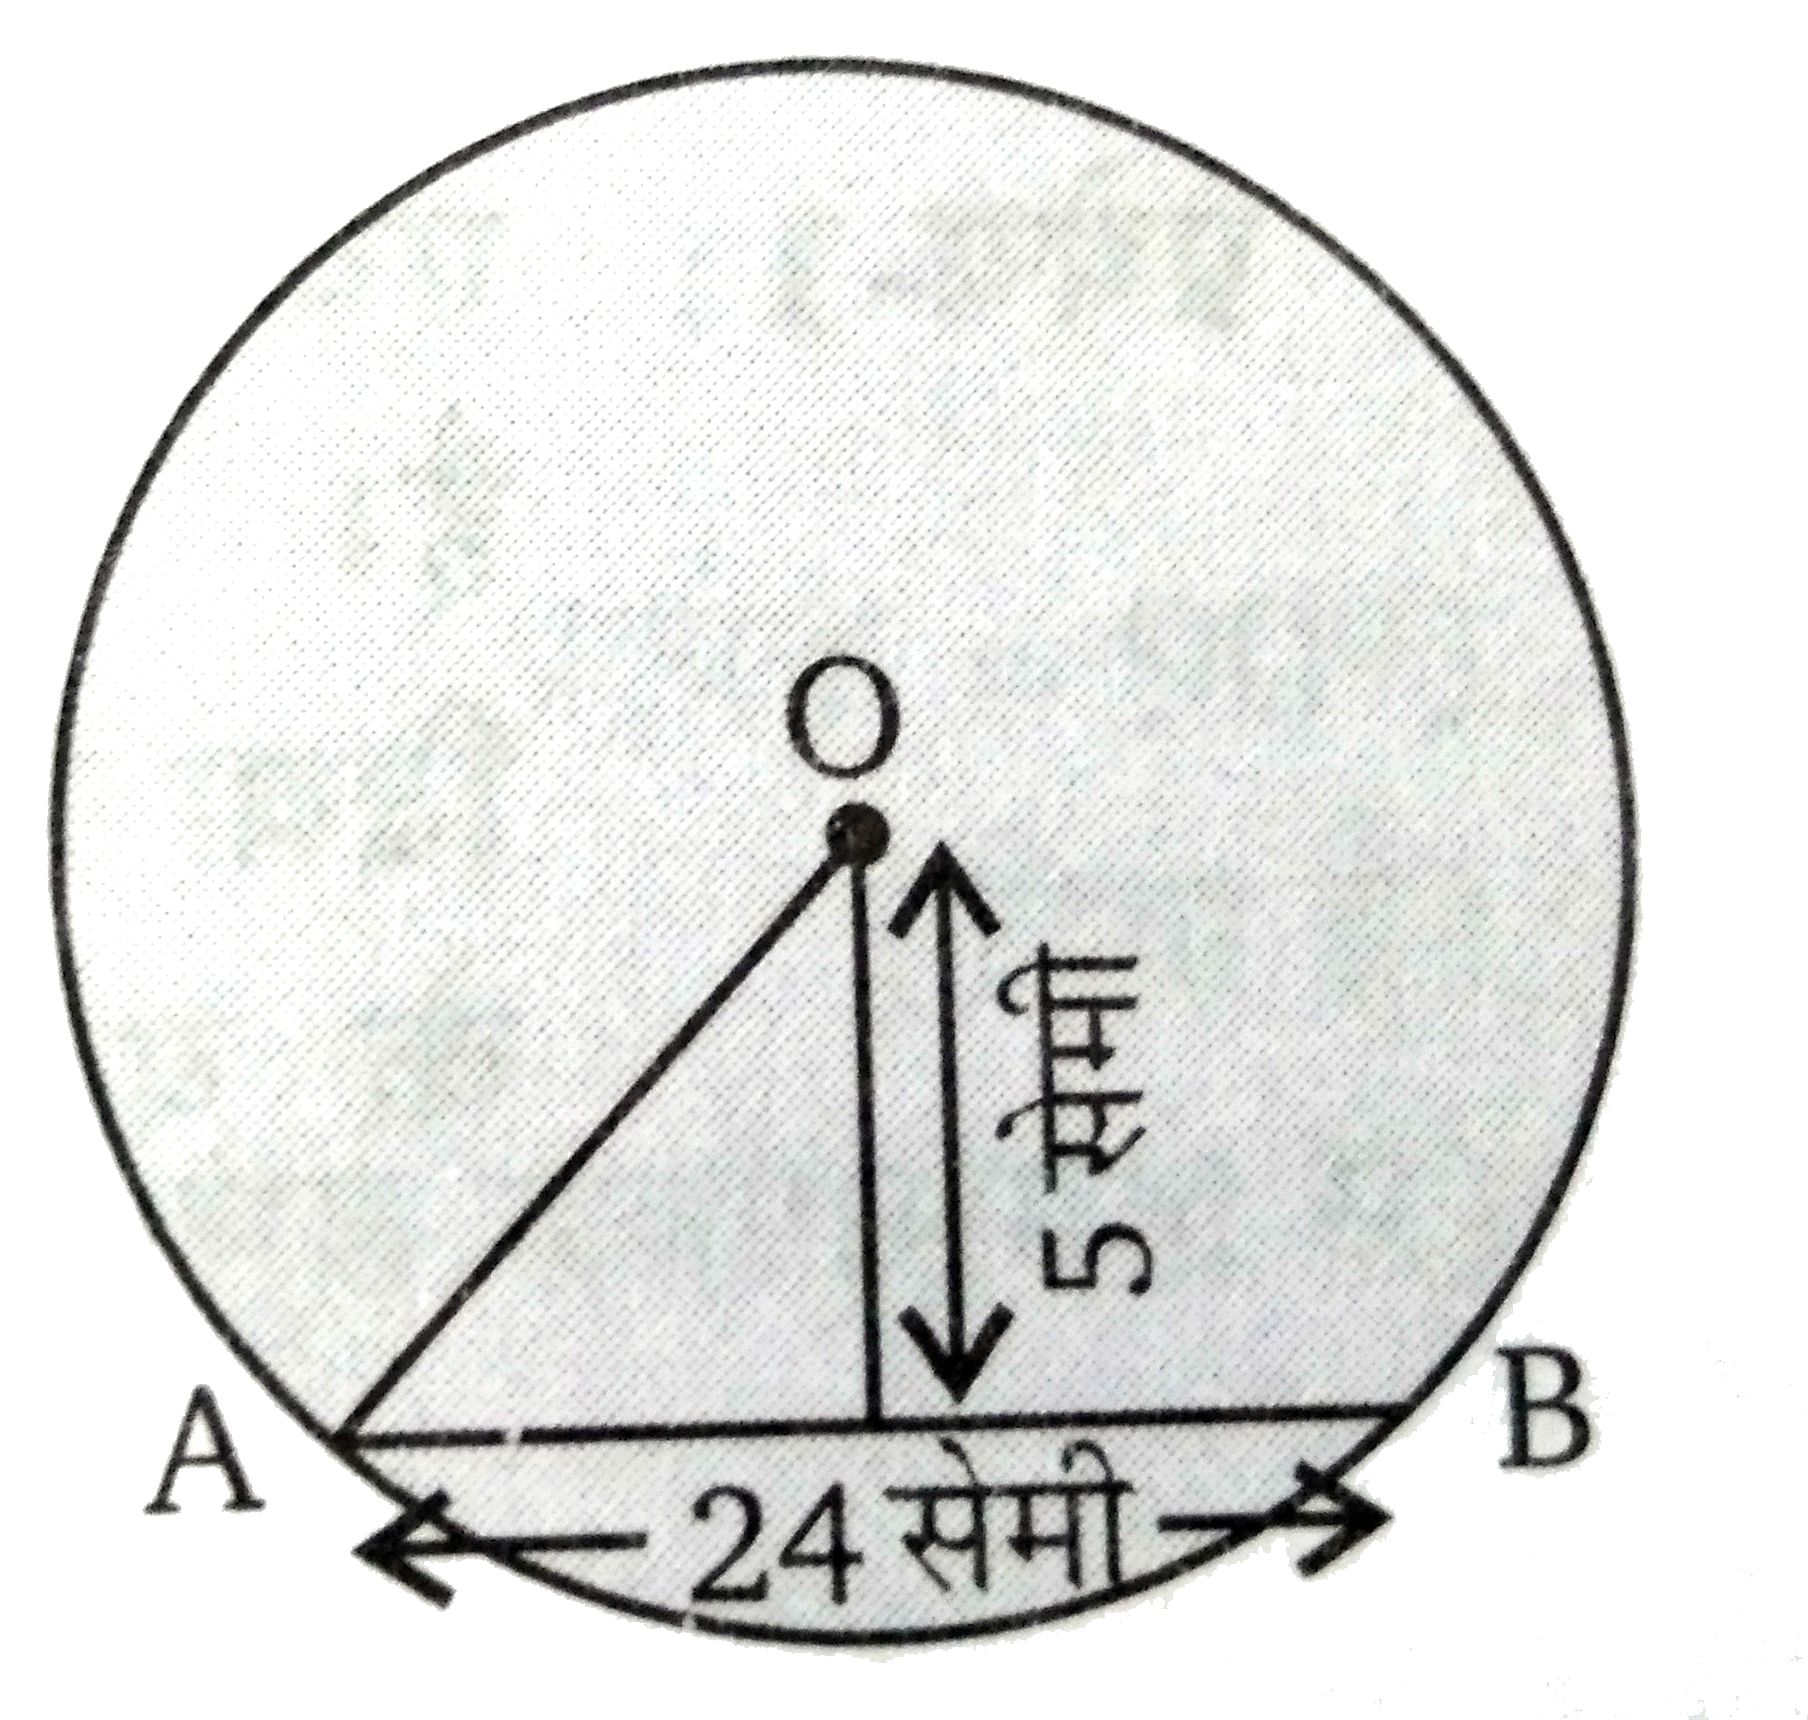 चित्र में O वृत्त का केन्द्र है तथा एक जीवा AB  = 24 सेमी है। जीवा की वृत्त के केन्द्र O से दूरी 5 सेमी है। तब वृत्त का व्यास ज्ञात कीजिए।